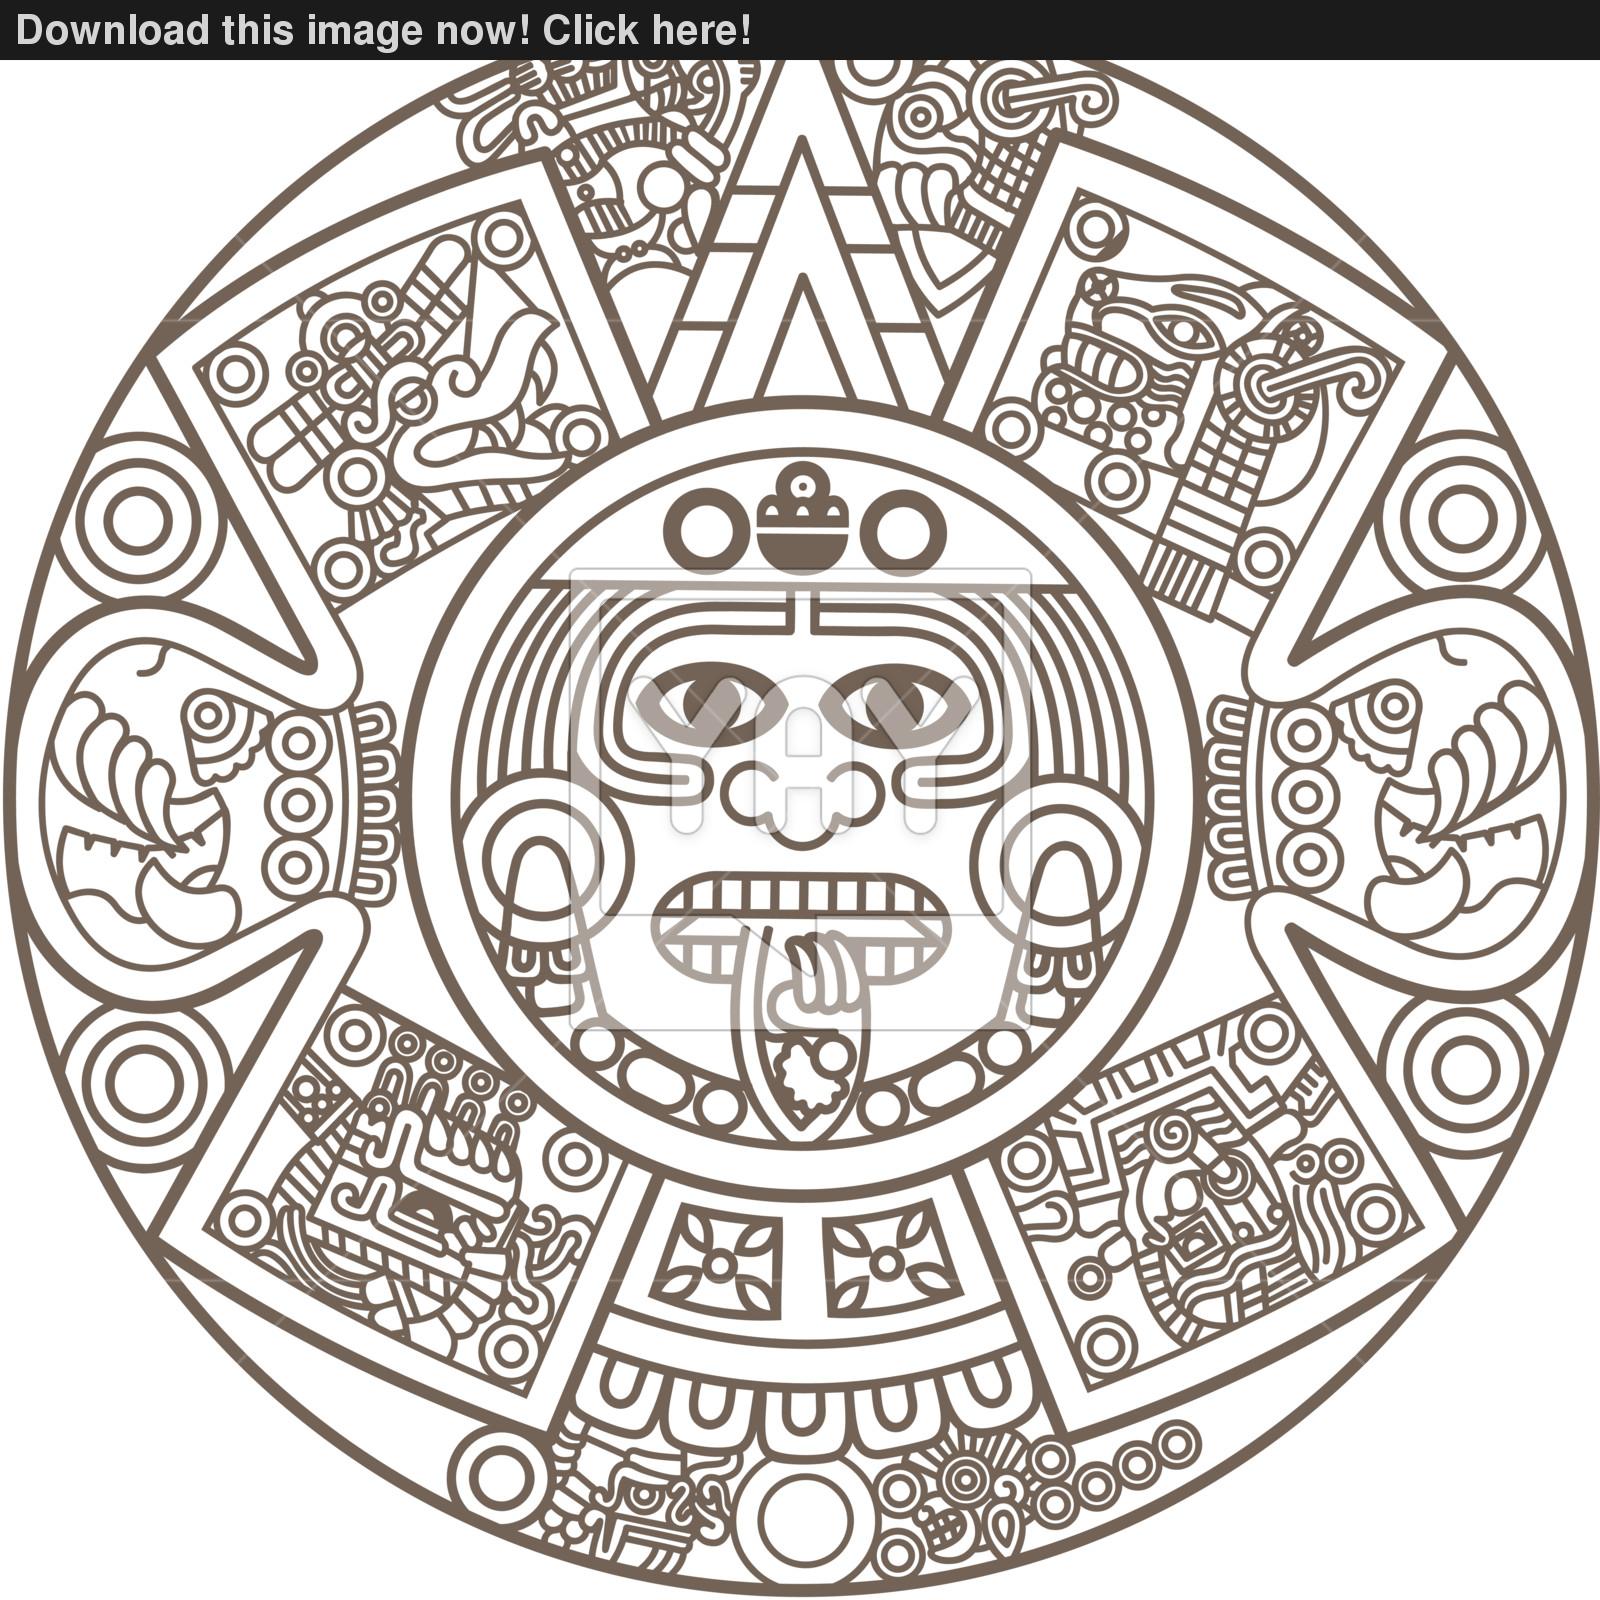 Art Aztec Calendar Drawing Aztec Art Mixed Media by Arturo Rios